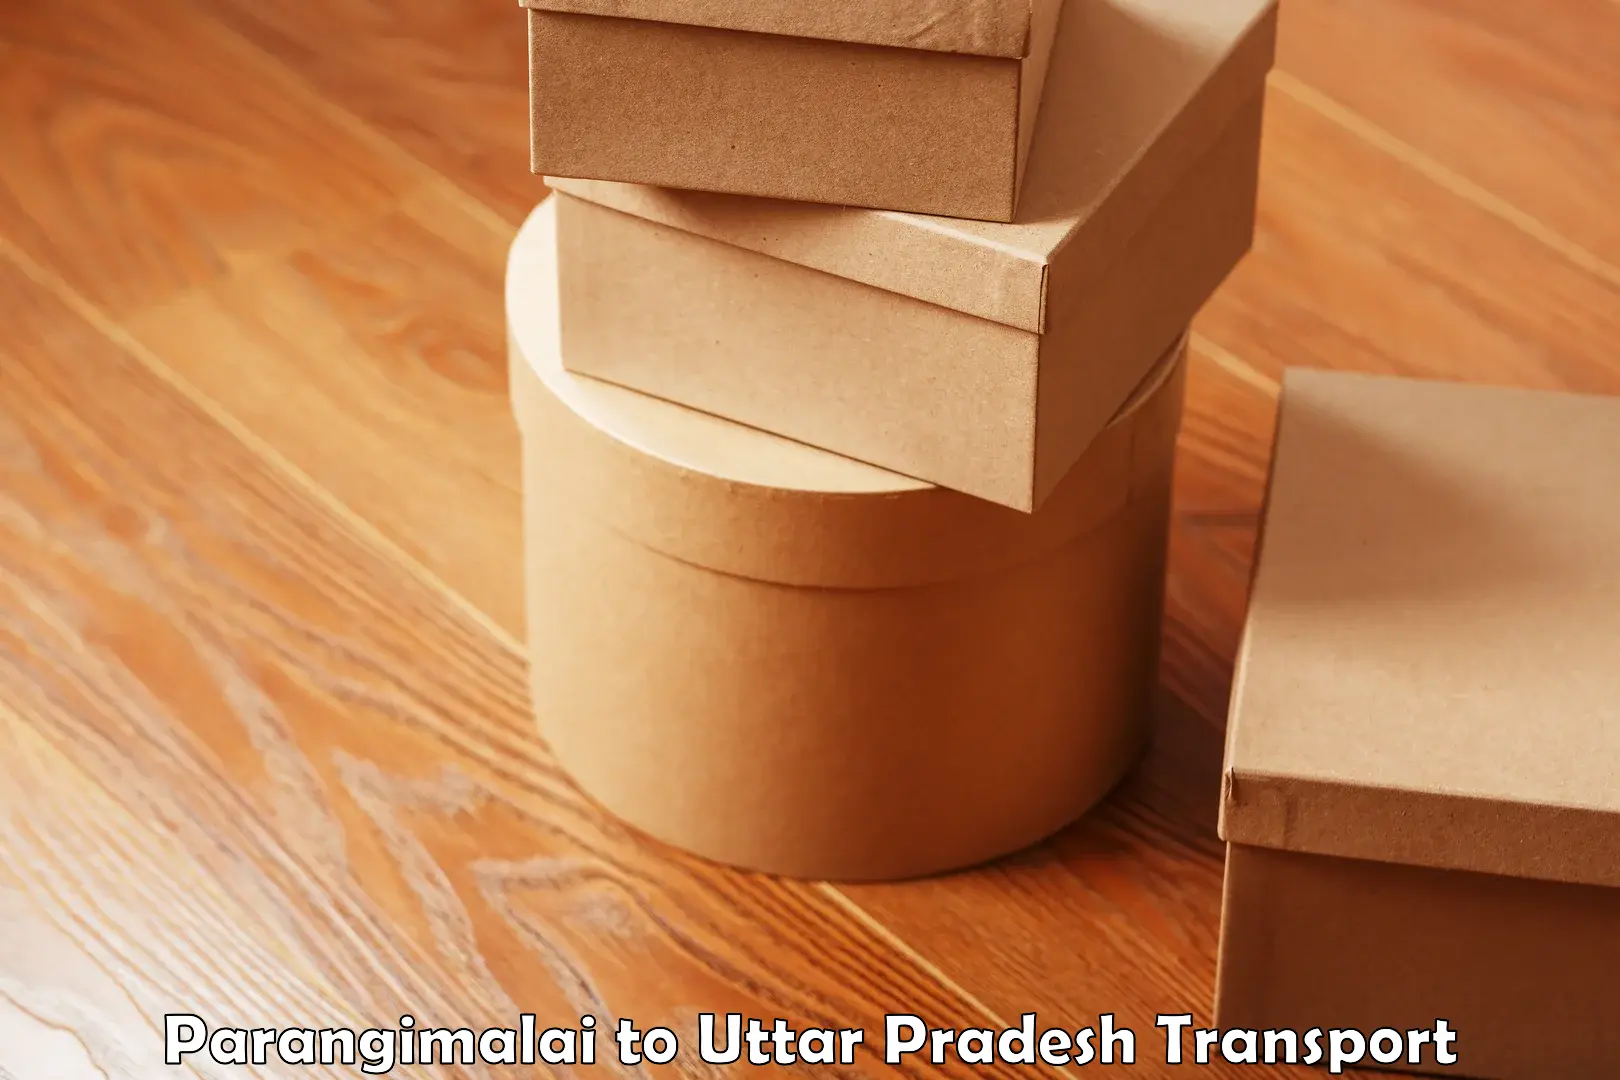 Furniture transport service in Parangimalai to Uttar Pradesh